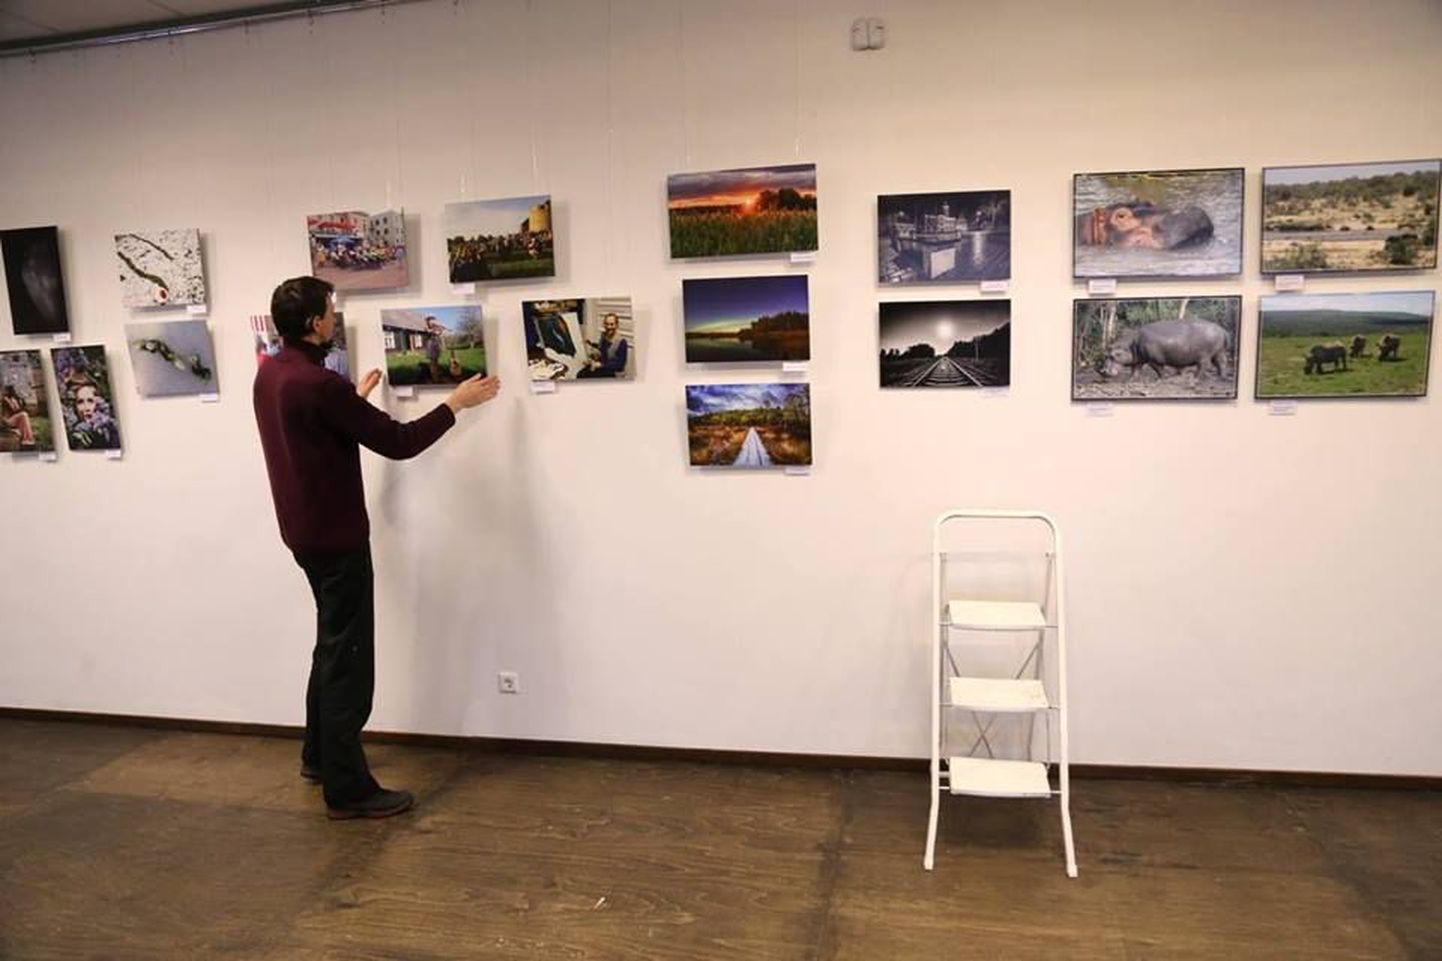 Aasta foto konkurssi korraldab Viljandi fotoklubi, kes sätib kõik võistlusele saadetud tööd linnagaleriis avatavale näitusele.